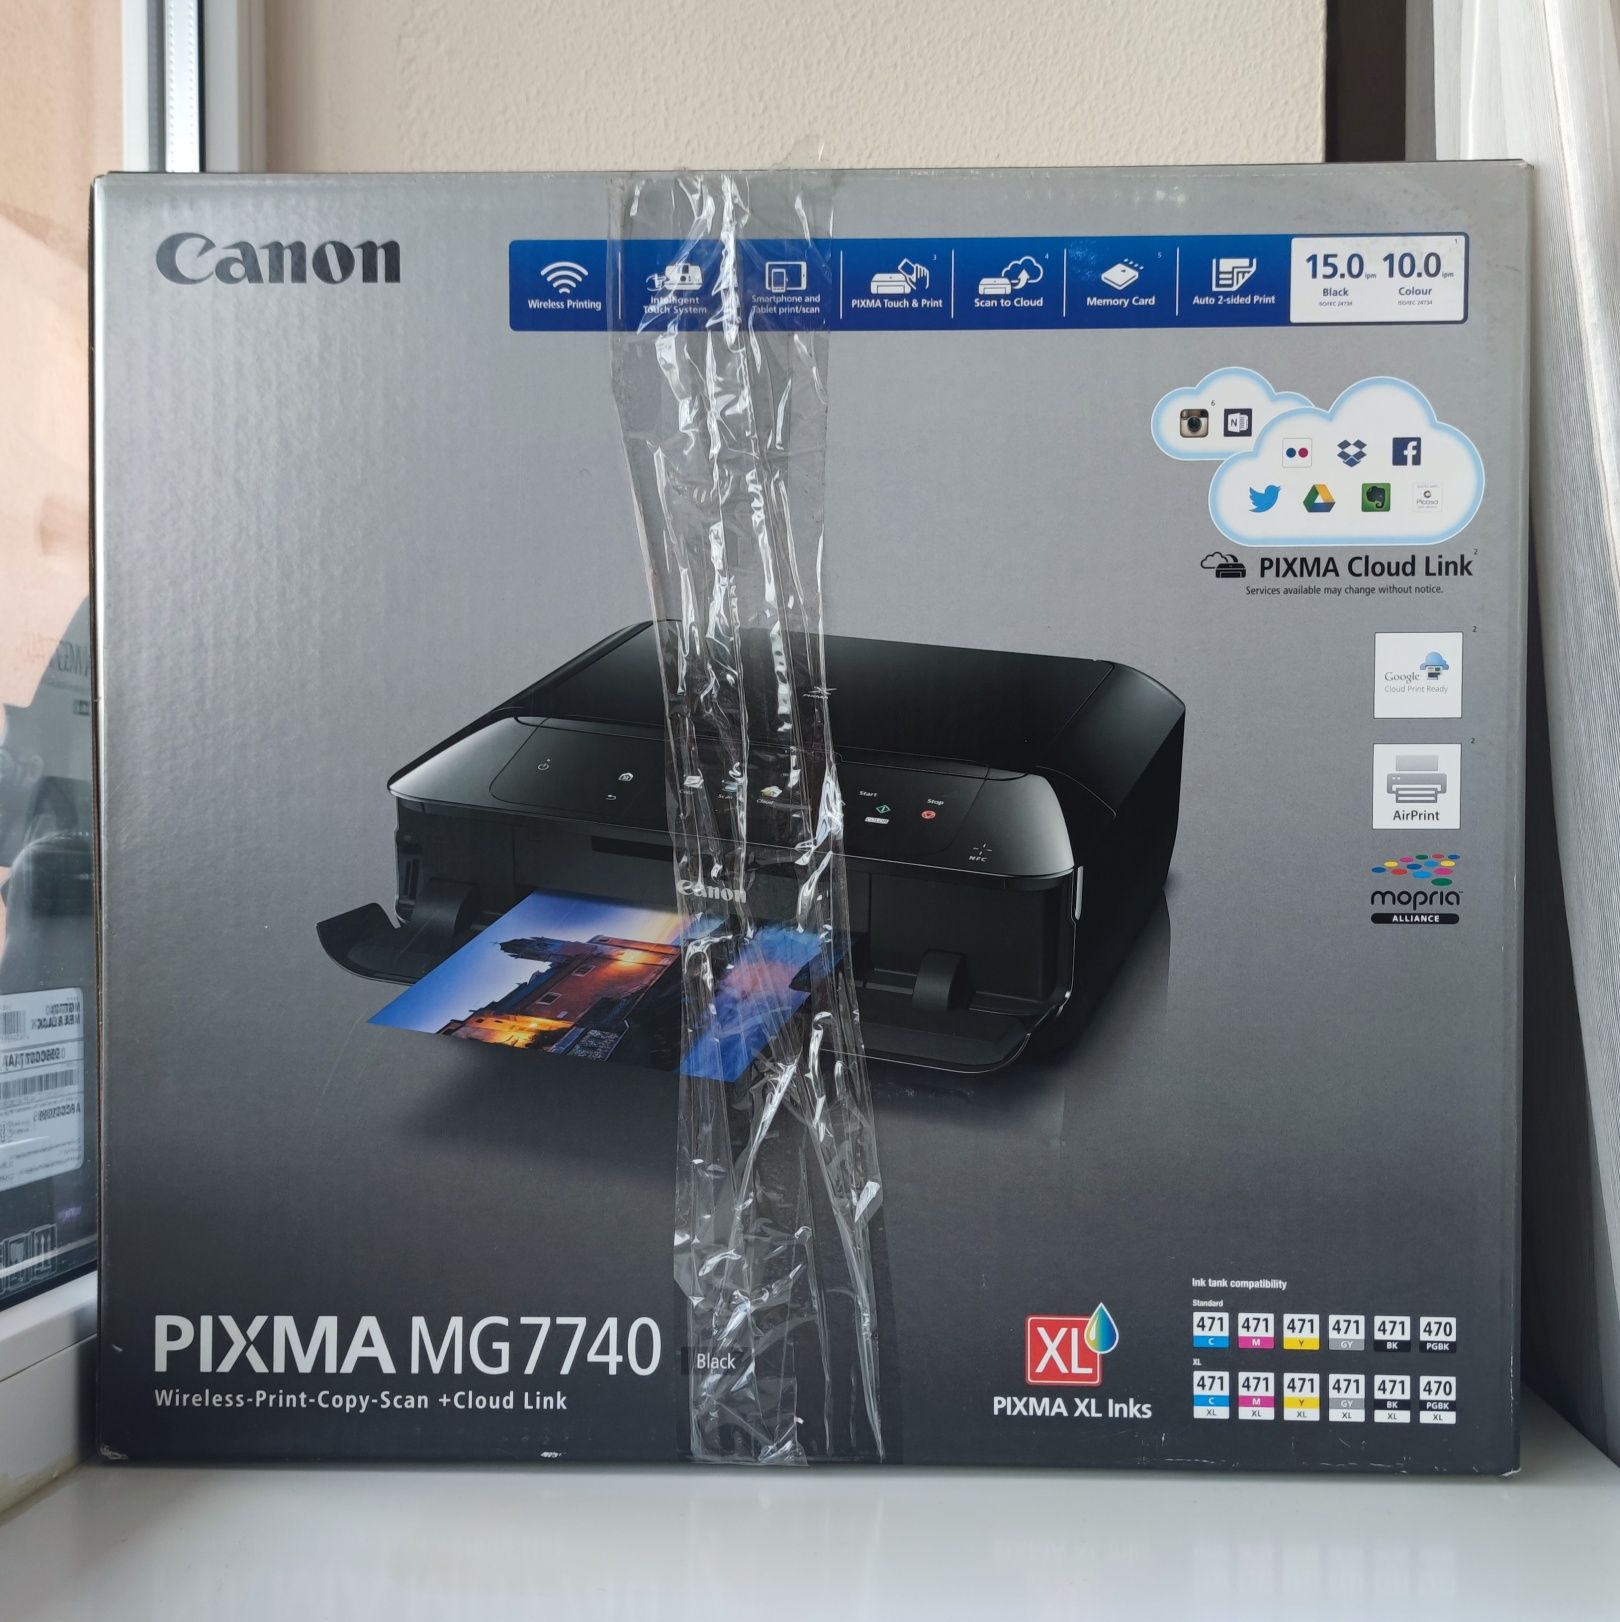 Canon pixma mg 7740, фото-принтер/МФУ